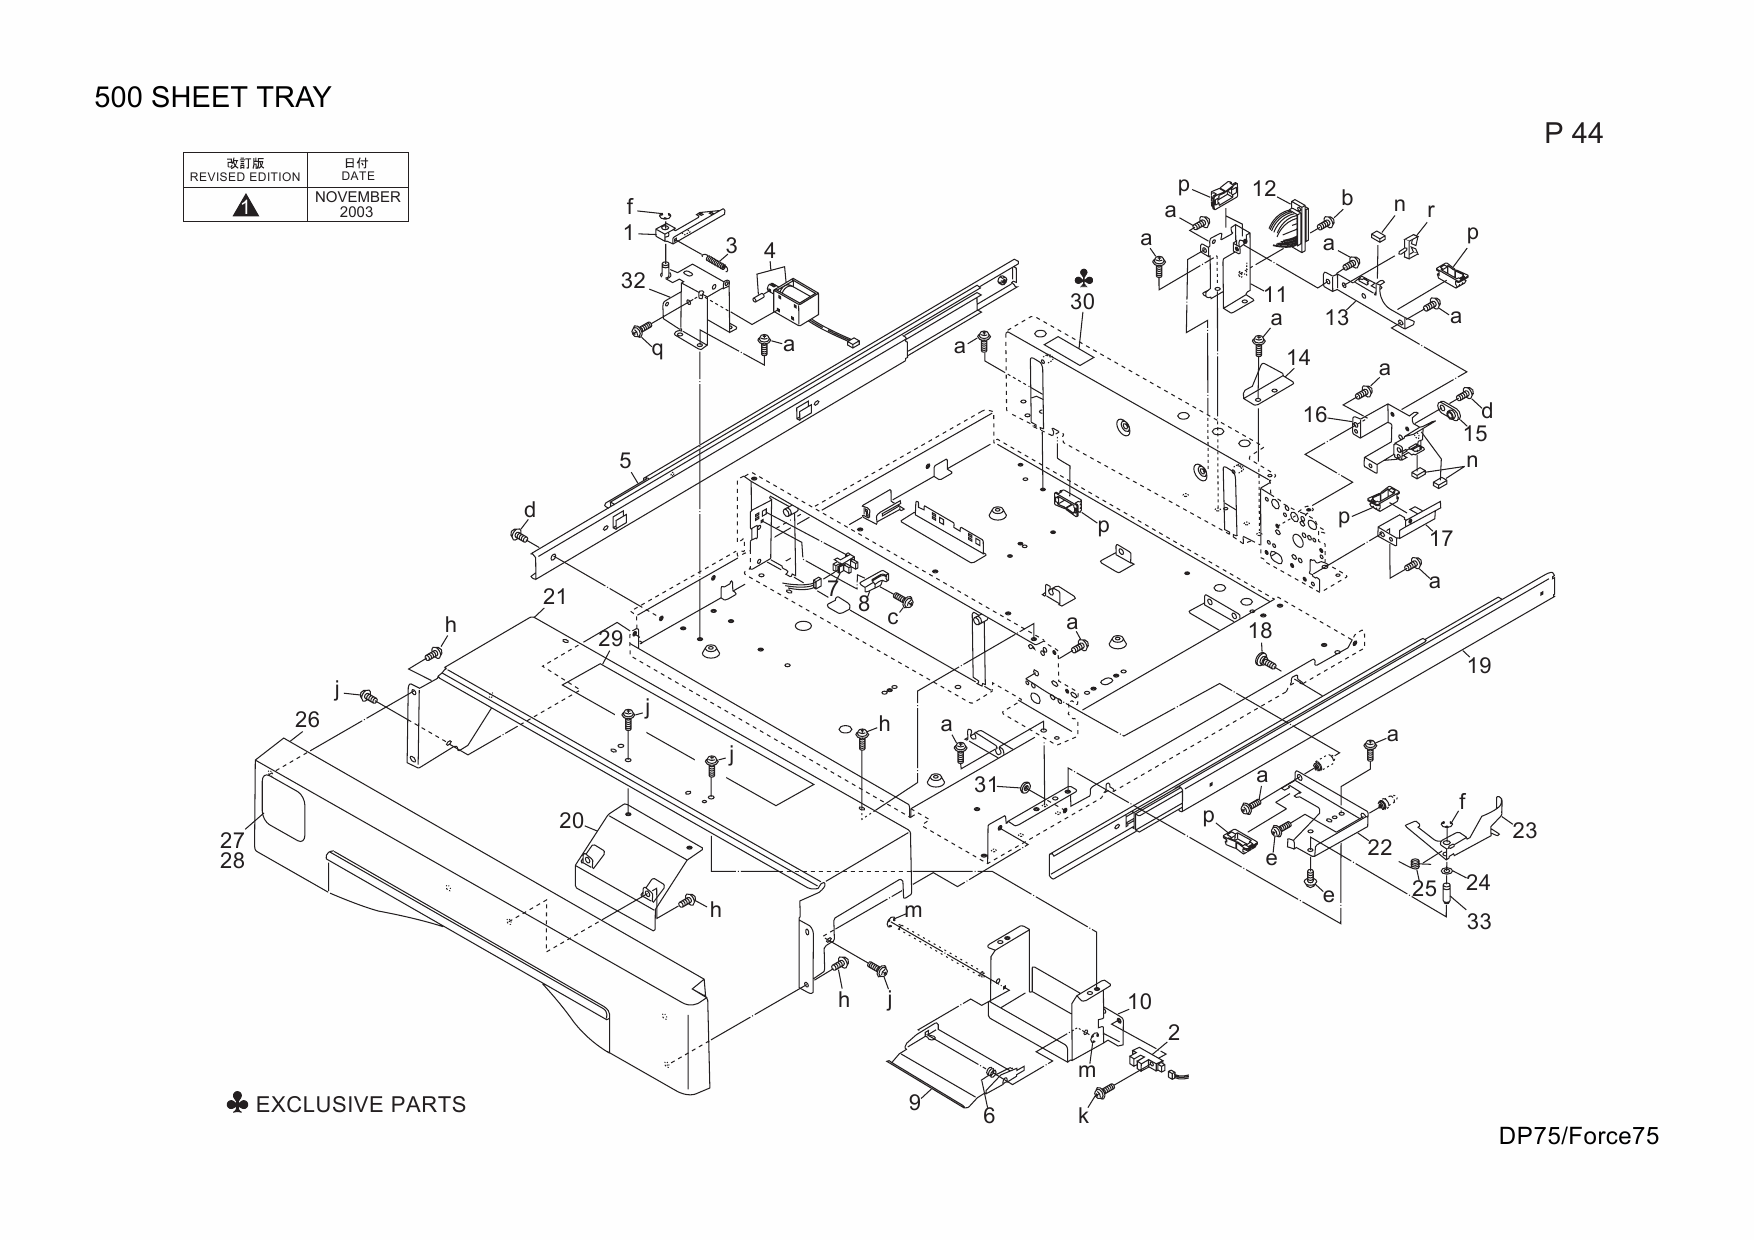 Konica-Minolta bizhub FORCE75 DP75 55ZE Parts Manual-5